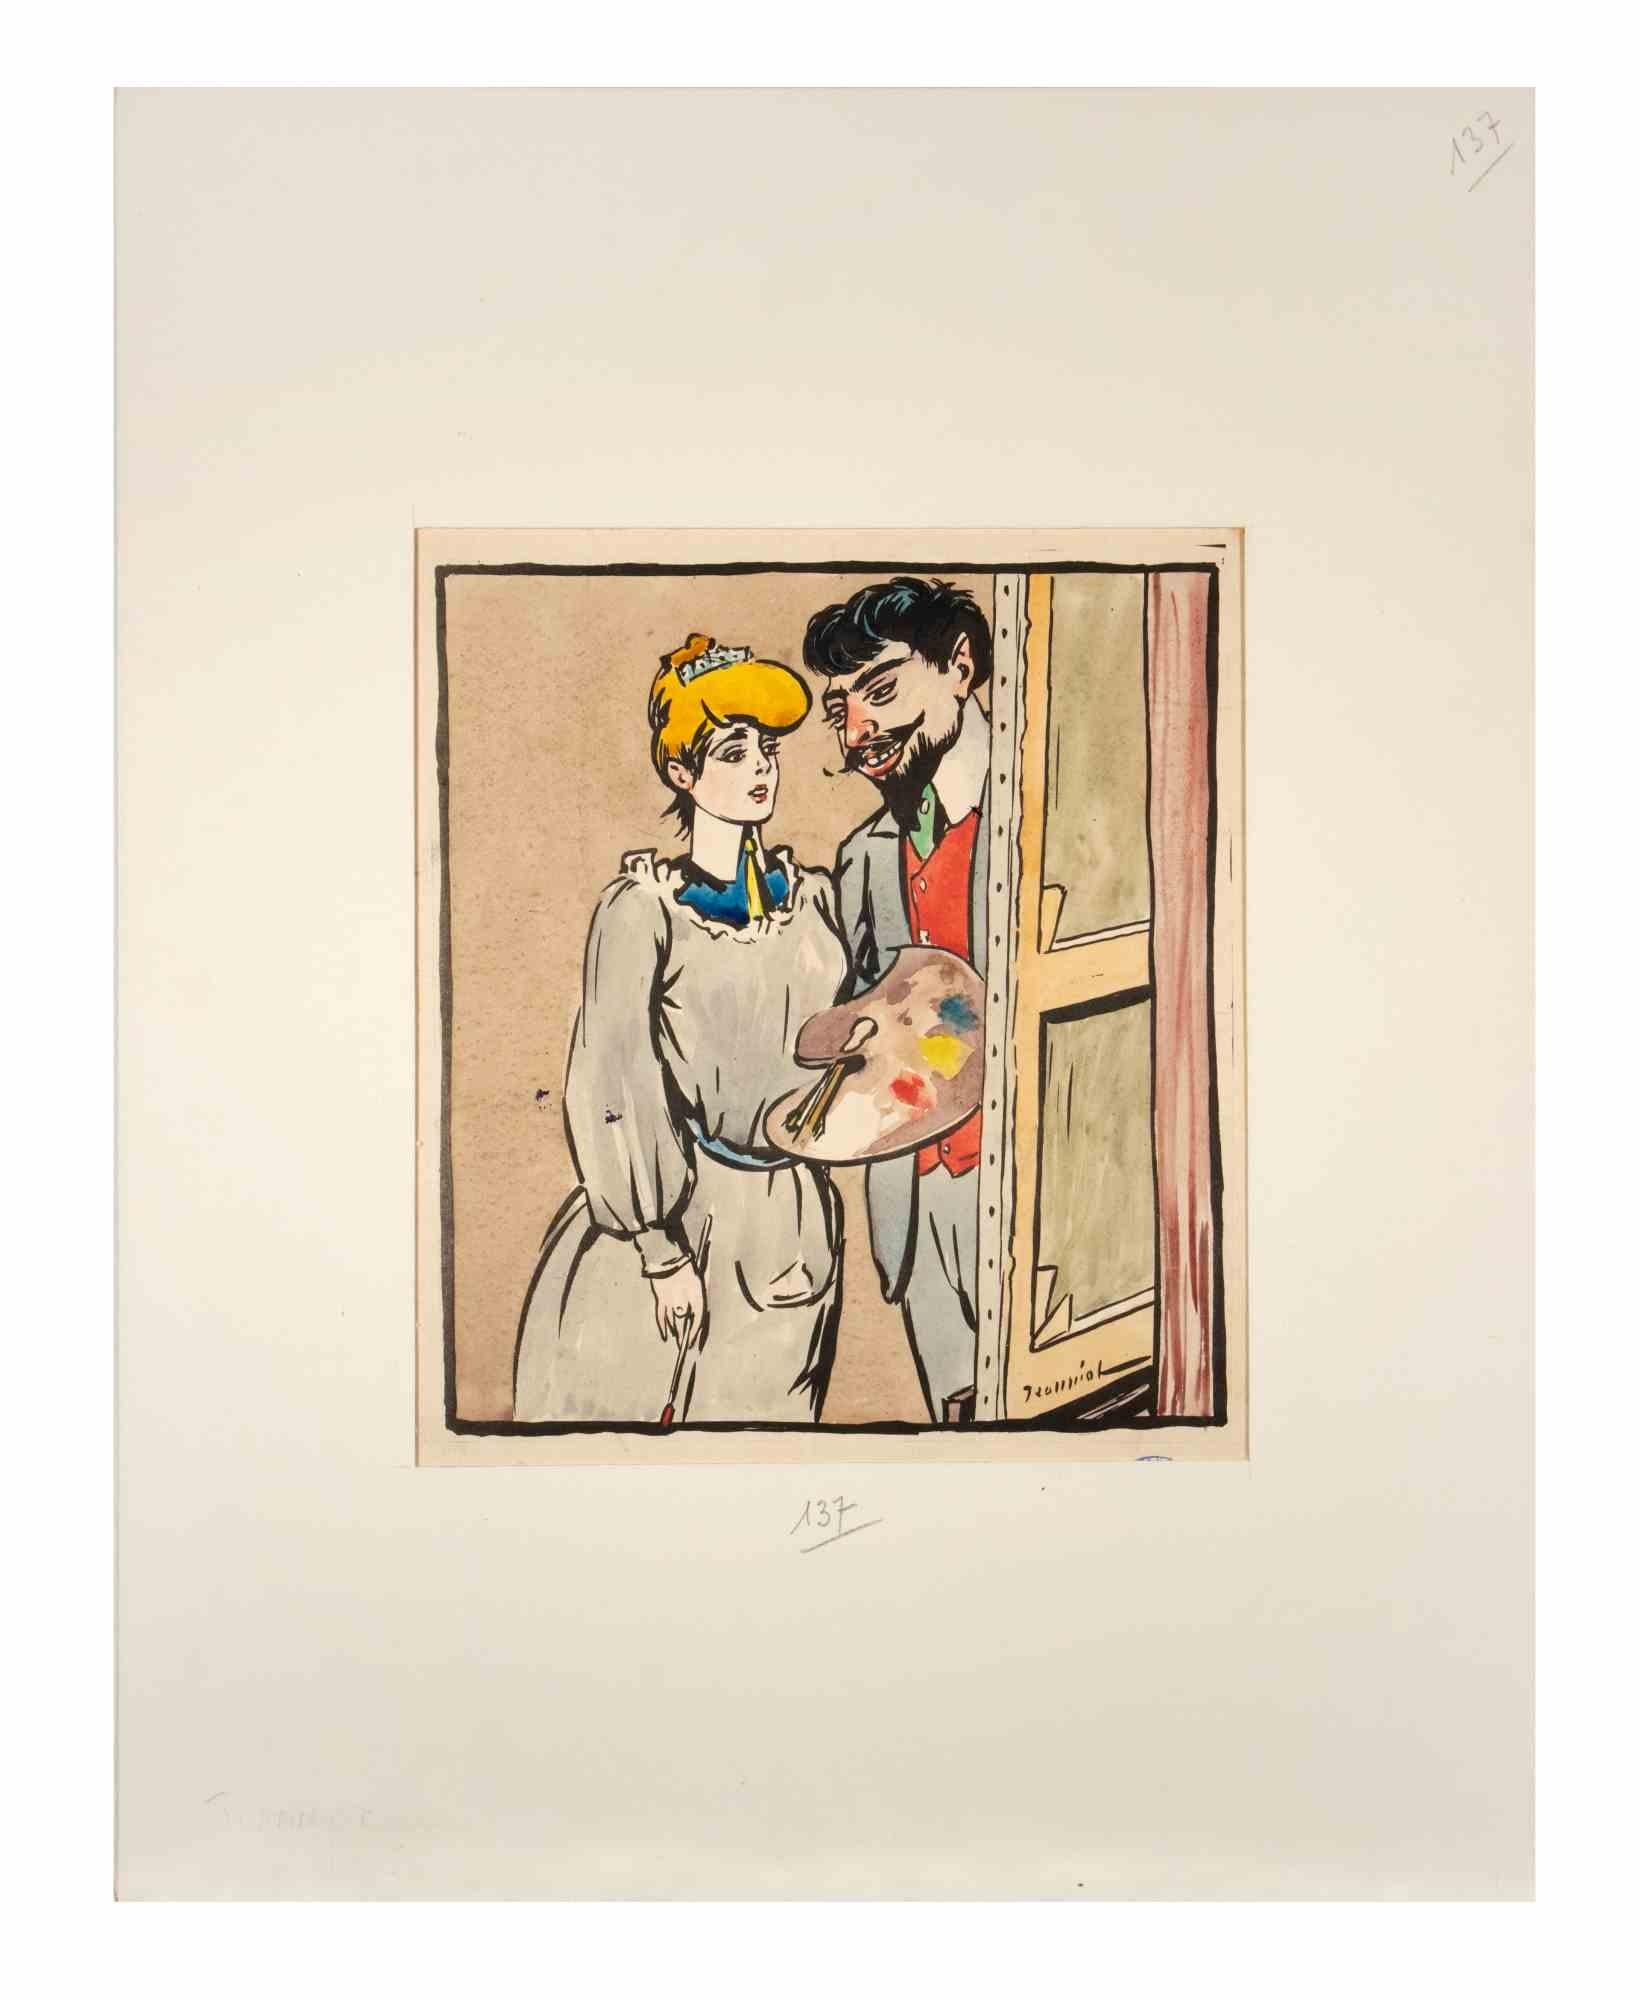 Au peintre est une encre et une aquarelle réalisée par Pierre Georges Jeanniot en 1904, pour la revue "Rire".

Bon état sur un papier jauni.

Tampon signé dans le coin inférieur droit.

Comprend un passeport en carton de couleur crème (44x34,5